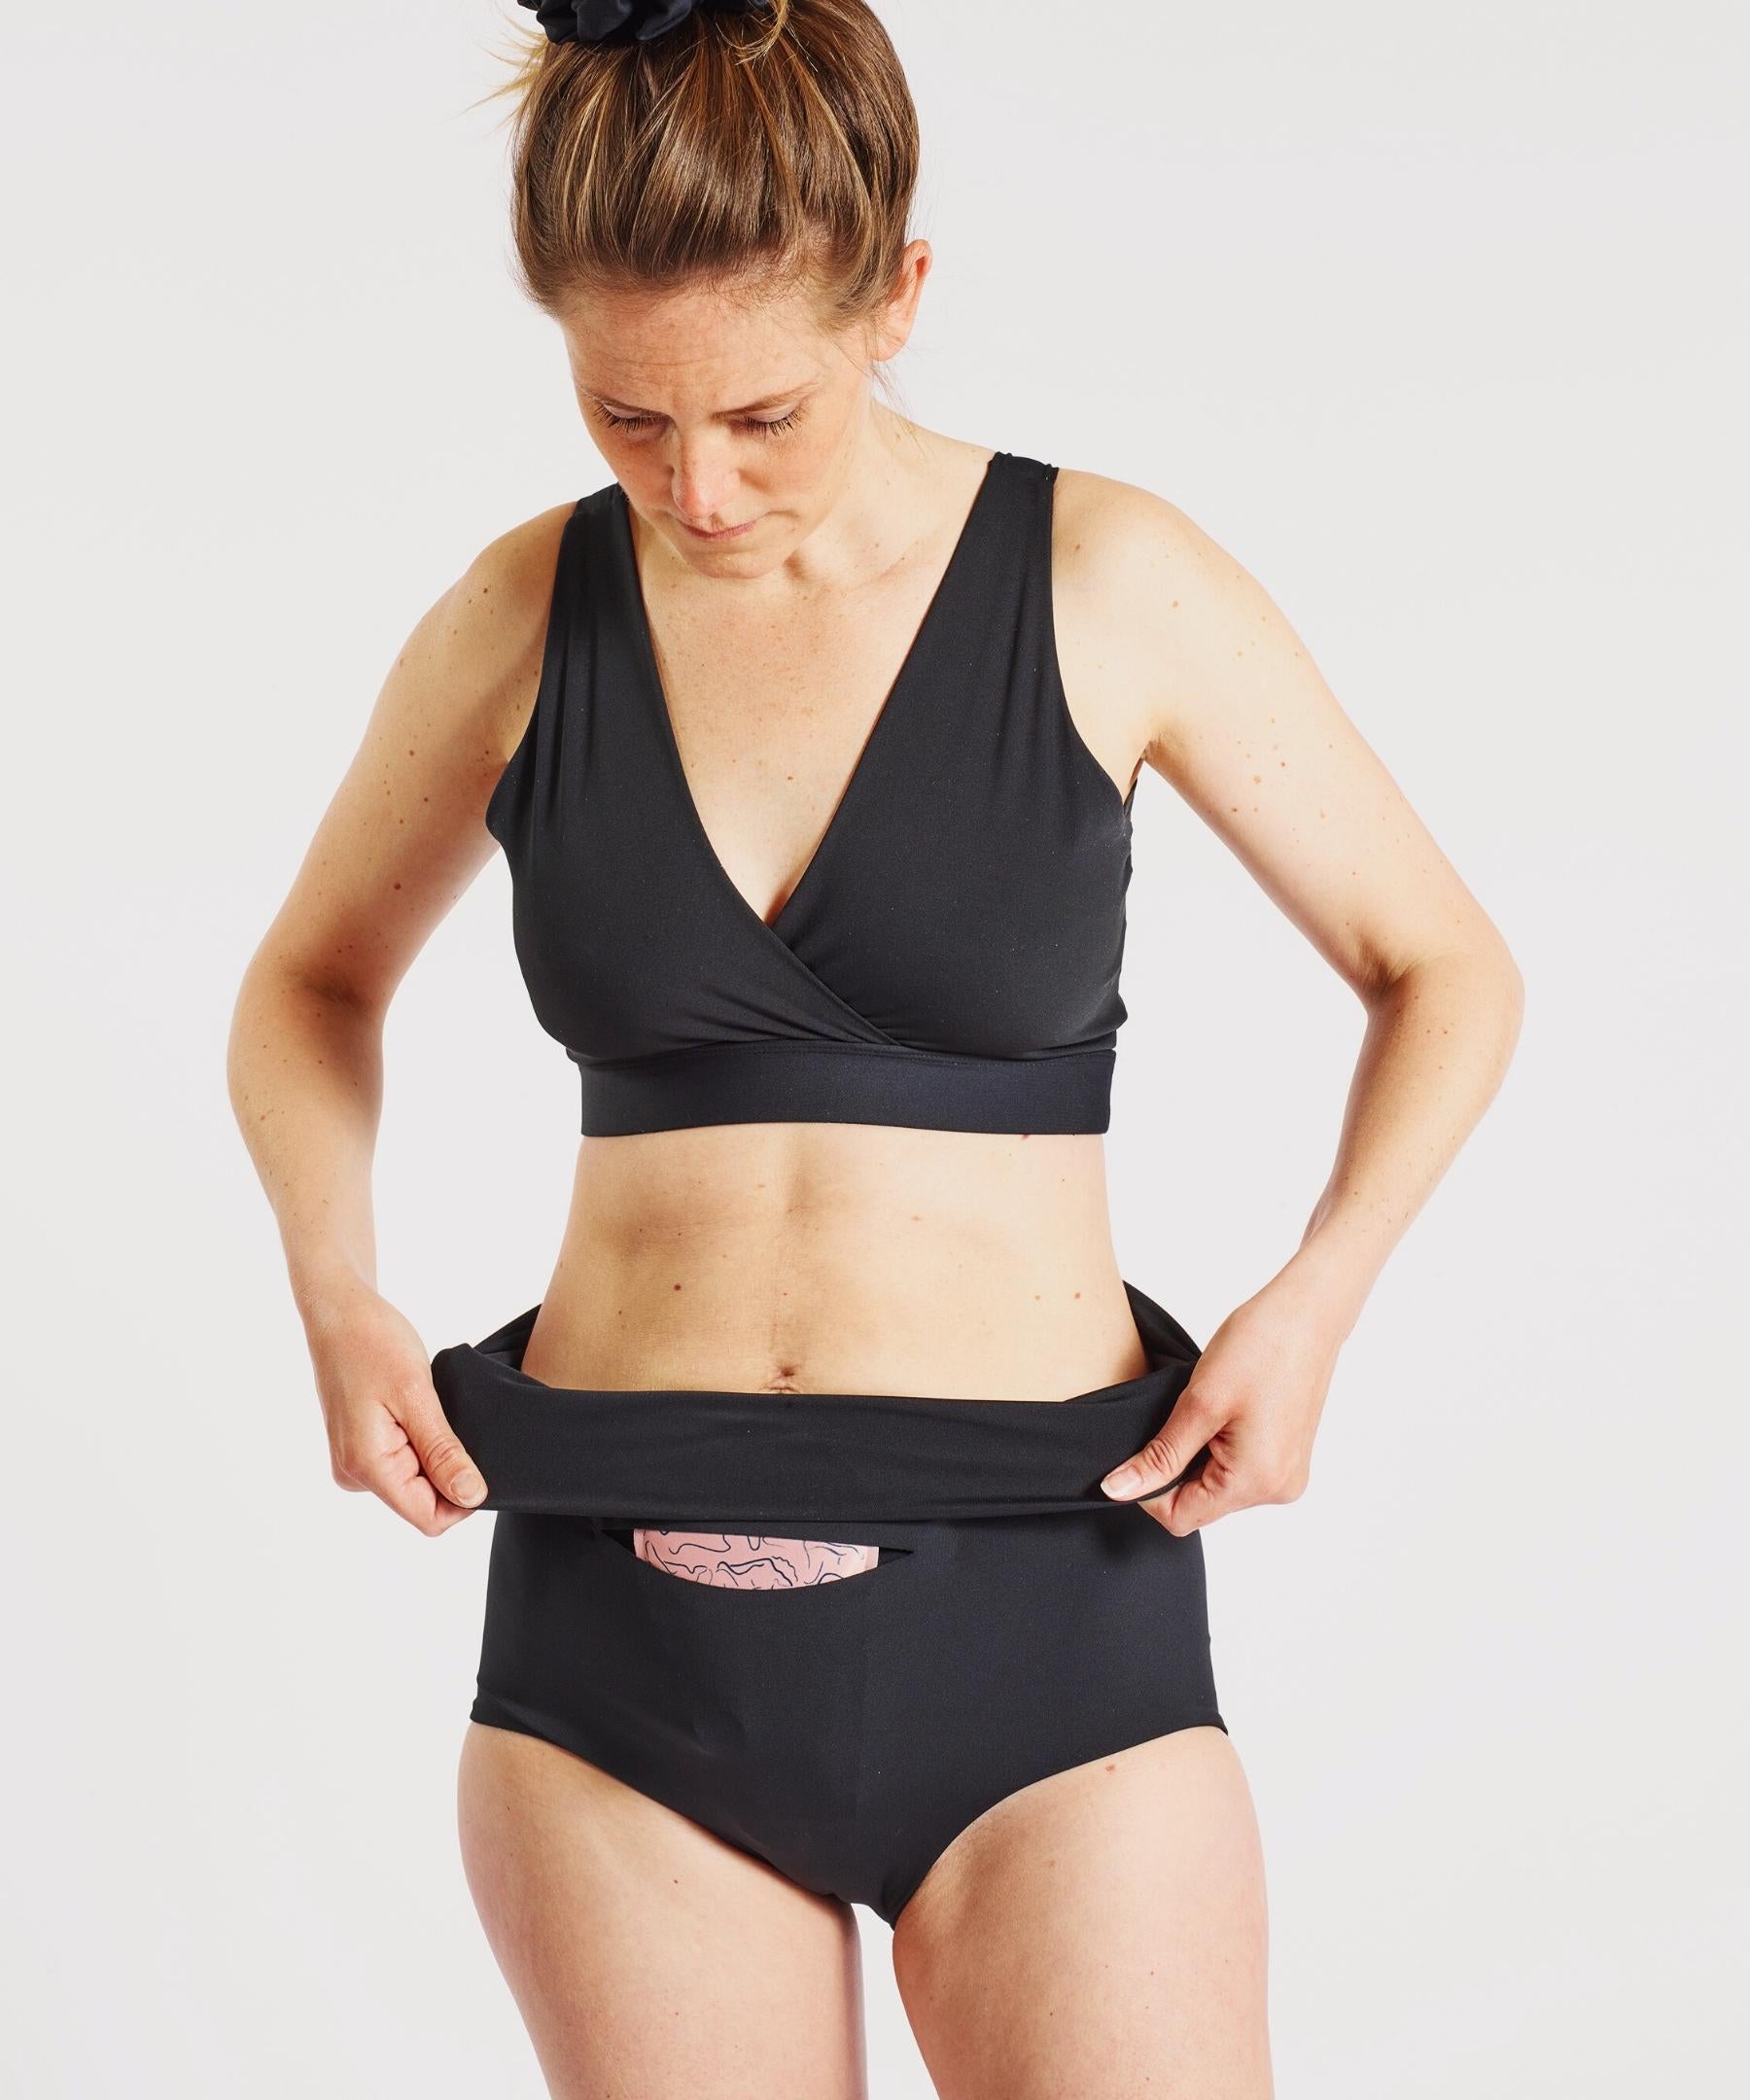 FourthWear Postpartum Underwear + Between Legs Ice/Heat Bundle – Nyssa